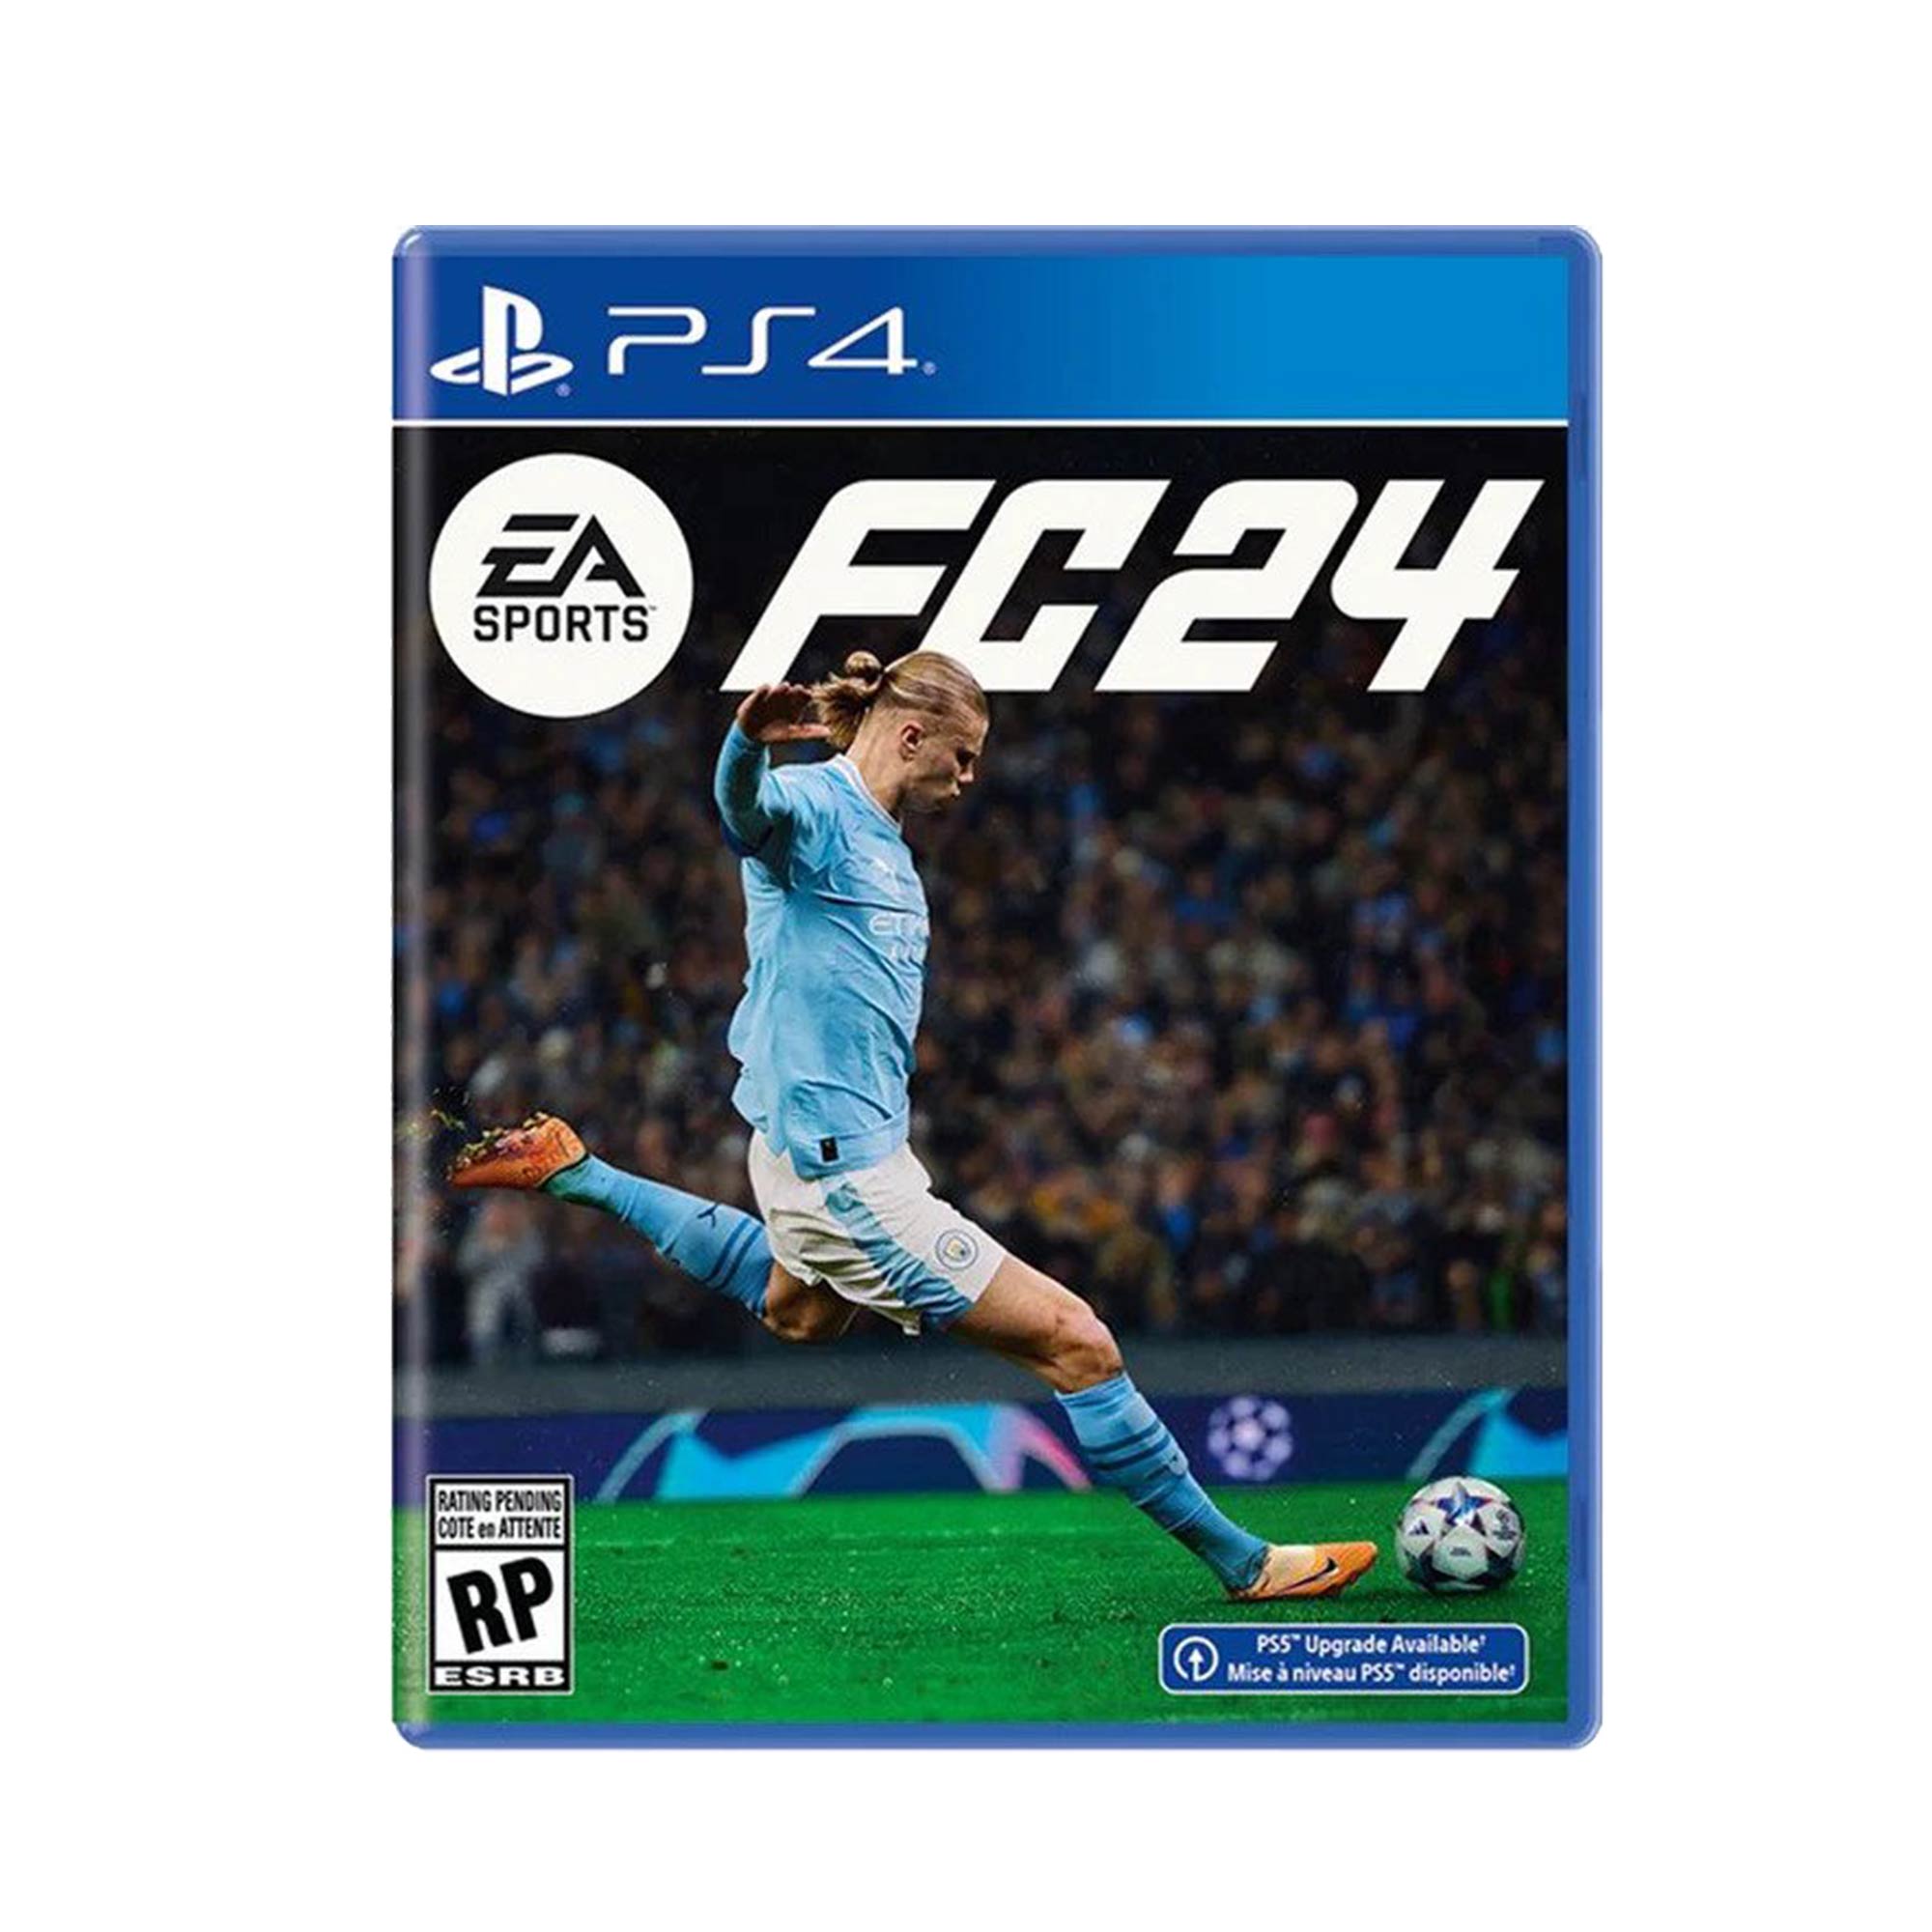 PS4 FC 24